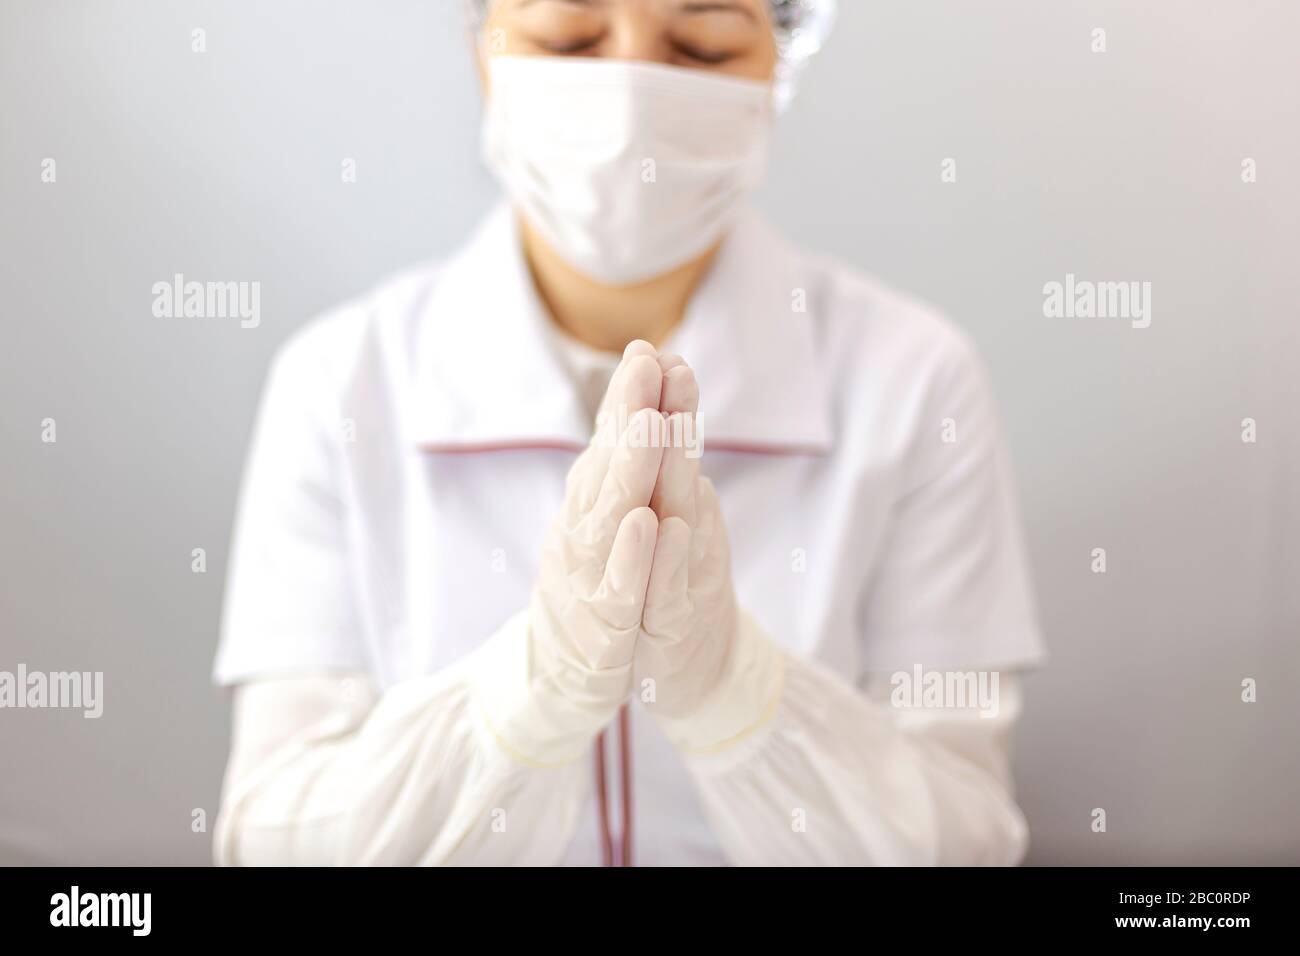 Der Assistent oder Arzt mit Maske und Handschuhen steht im Gebet zu allmächtigem Gott. Arzt mit Schutzausrüstung, der Geste des Betens macht Stockfoto